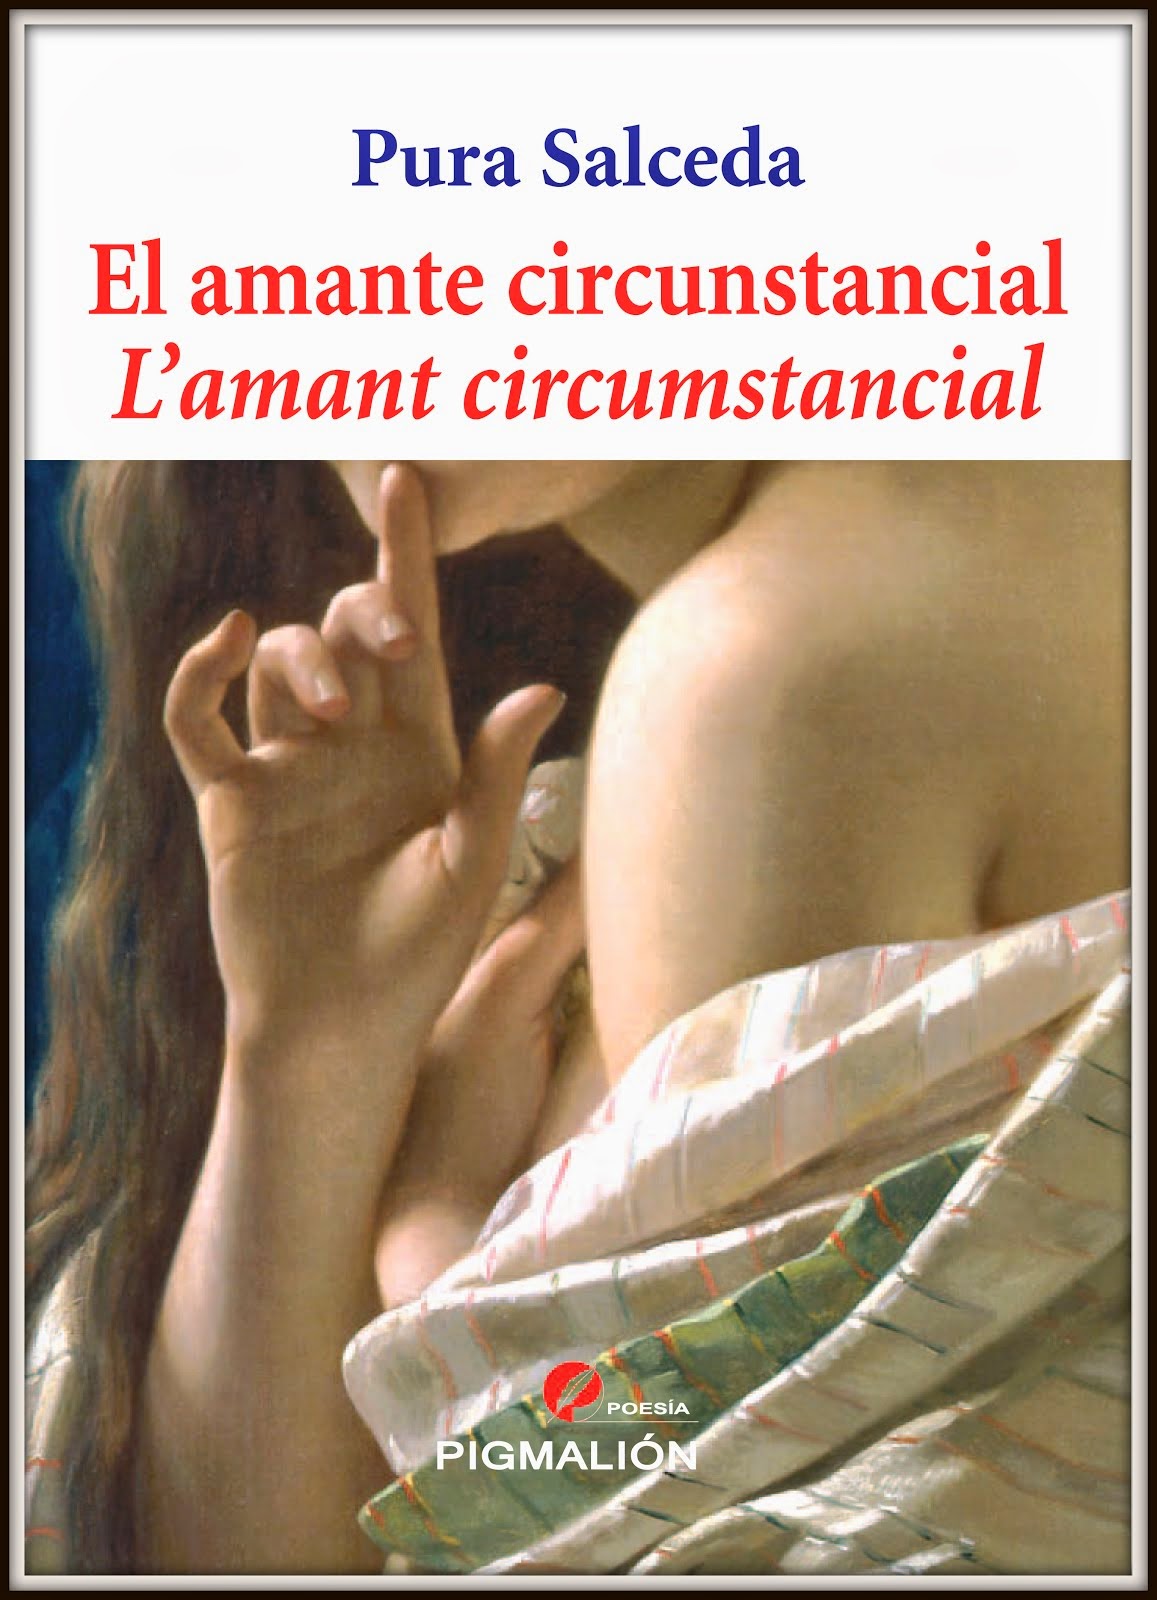 L'amant circumstancial (2014)